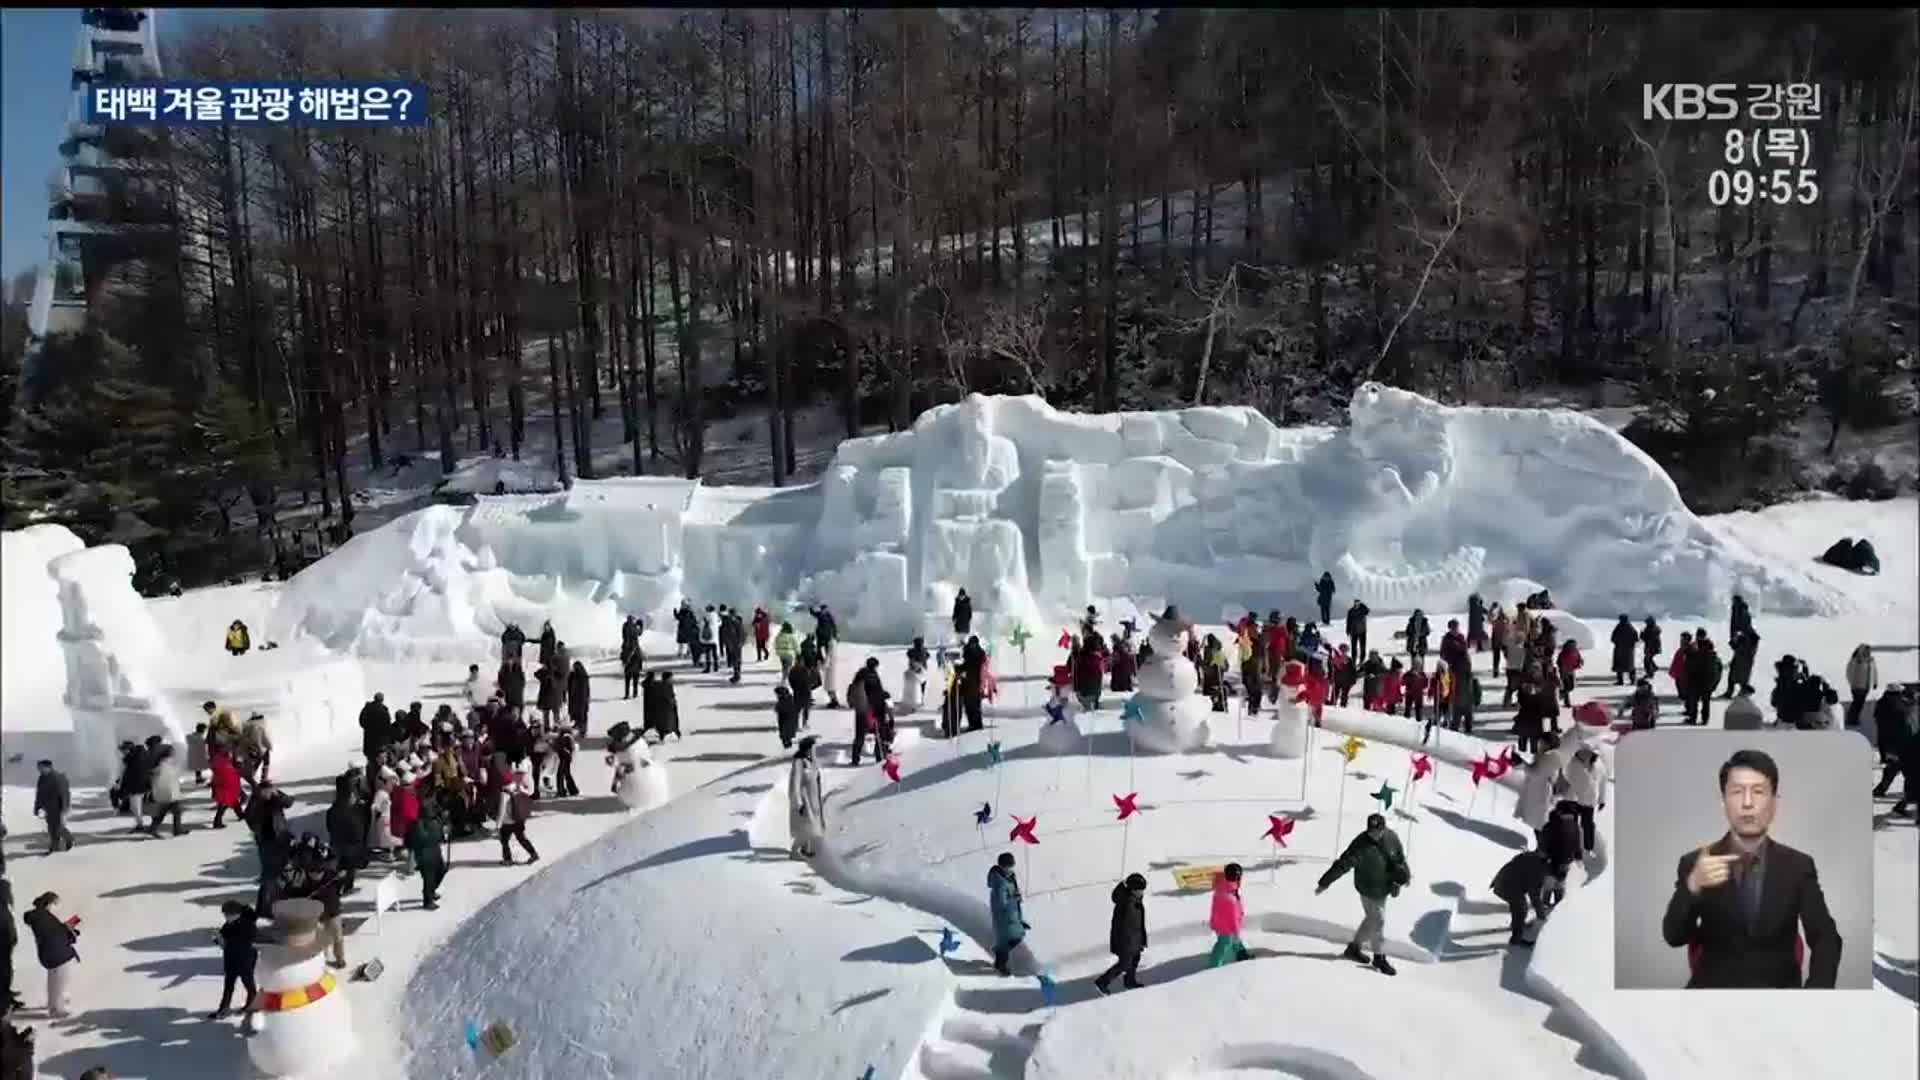 ‘태백산 눈 축제’ 이어갈 겨울 관광 상품을 찾아라!